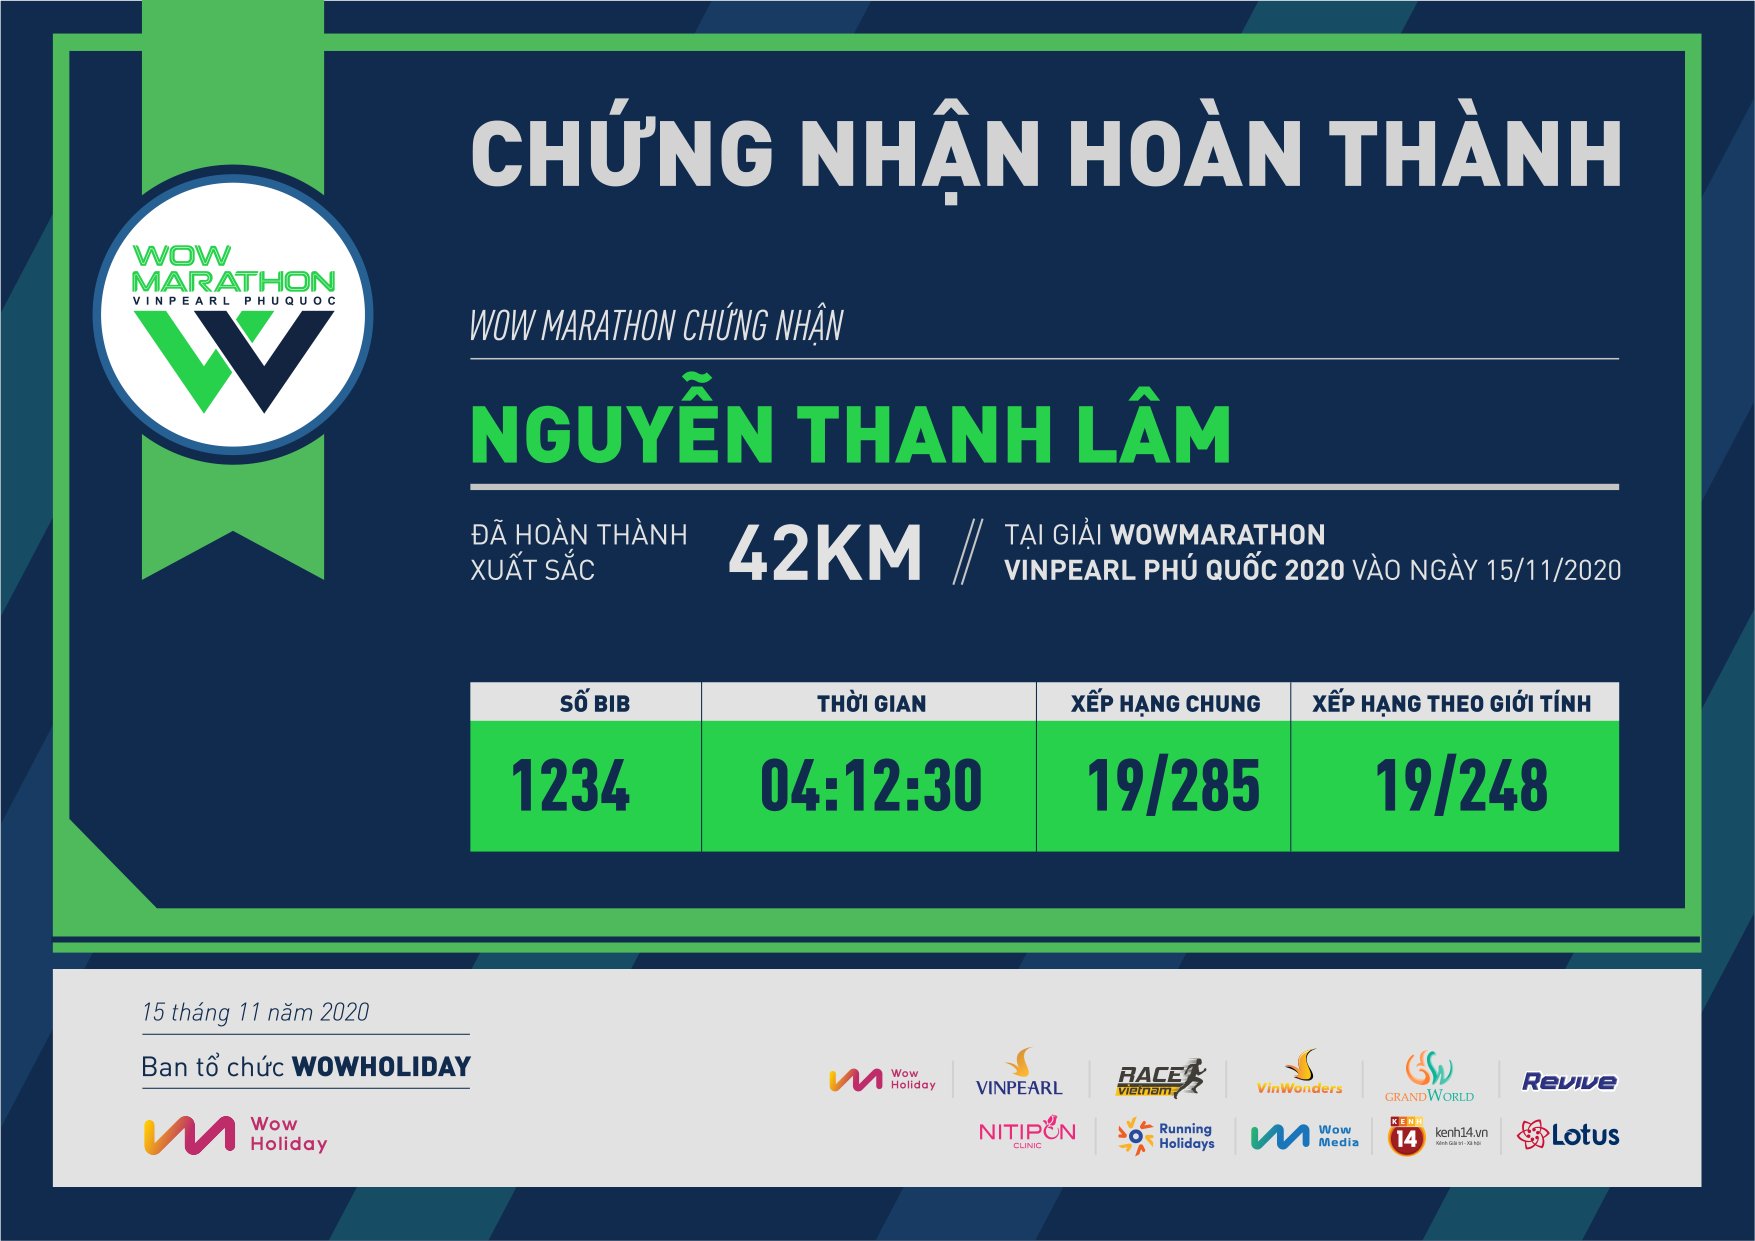 1234 - Nguyễn Thanh Lâm